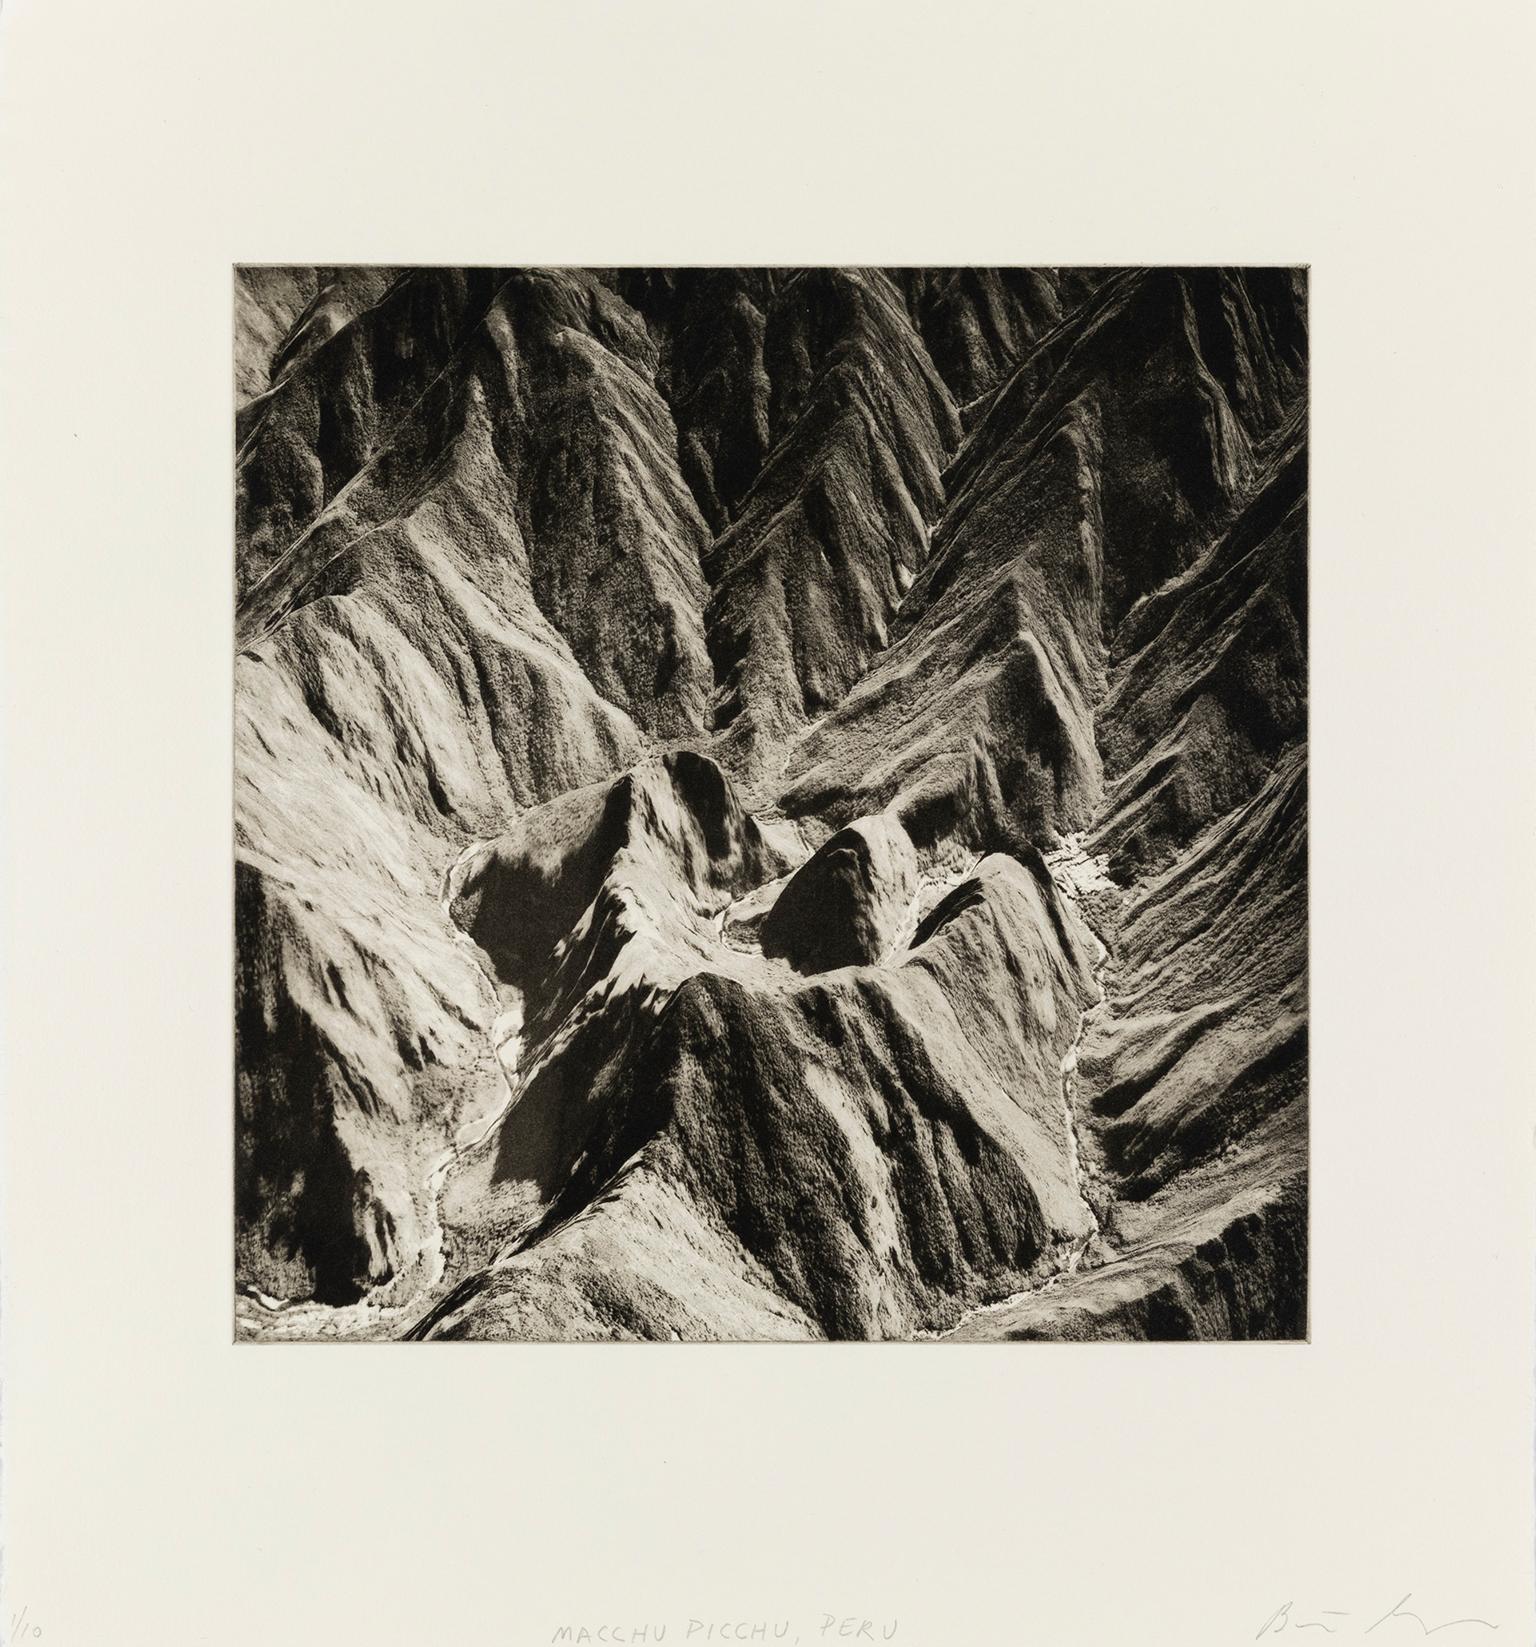 Beth Ganz Landscape Print - 'Machu Picchu, Peru' — from the series 'Axis Mundi', Contemporary